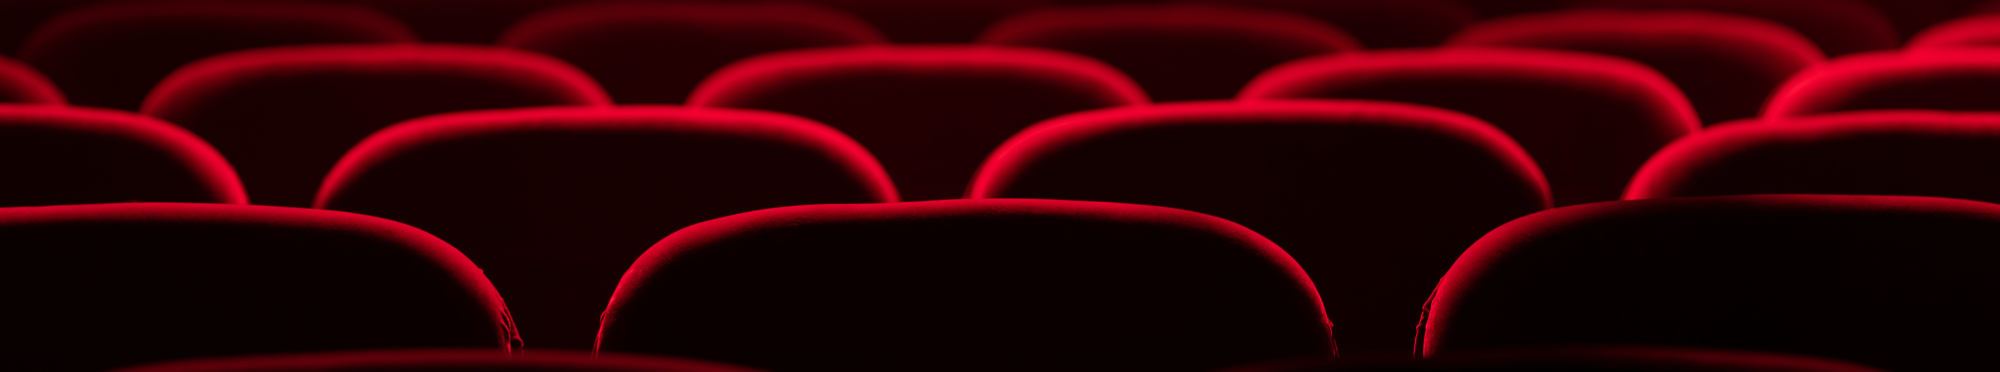 rote Sitze in einem Theater